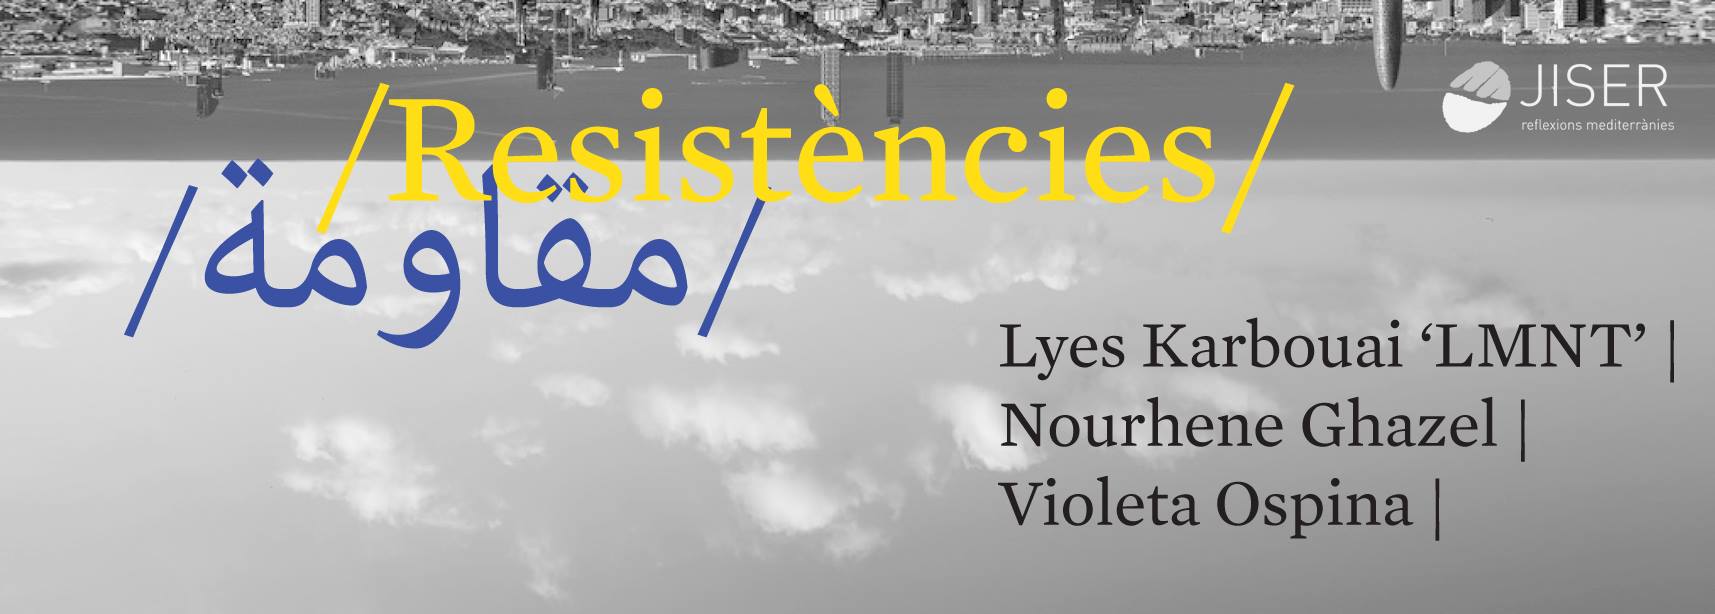 Exposición ‘Resistencias’ sobre residencias de creación mediterráneas